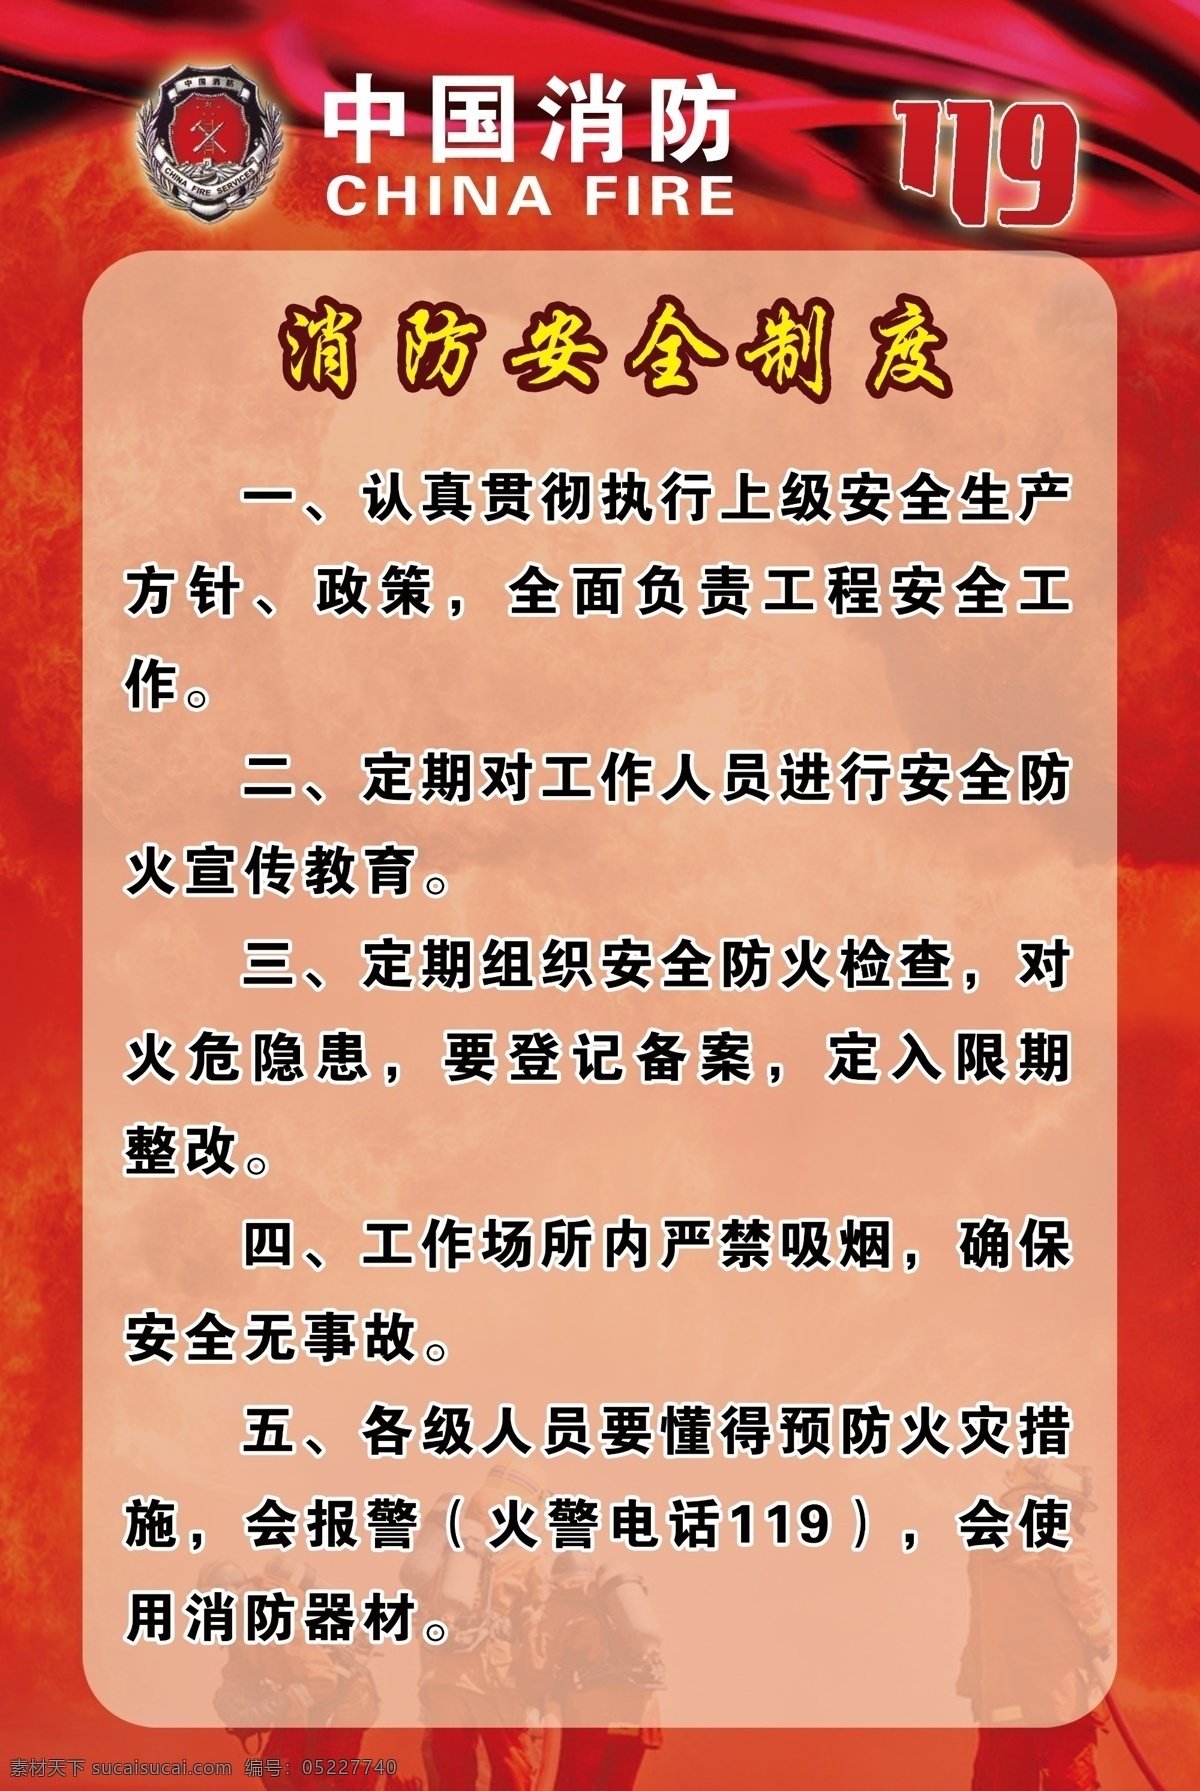 消防安全制度 制度 消防 中国消防 消防标志 展板 版面